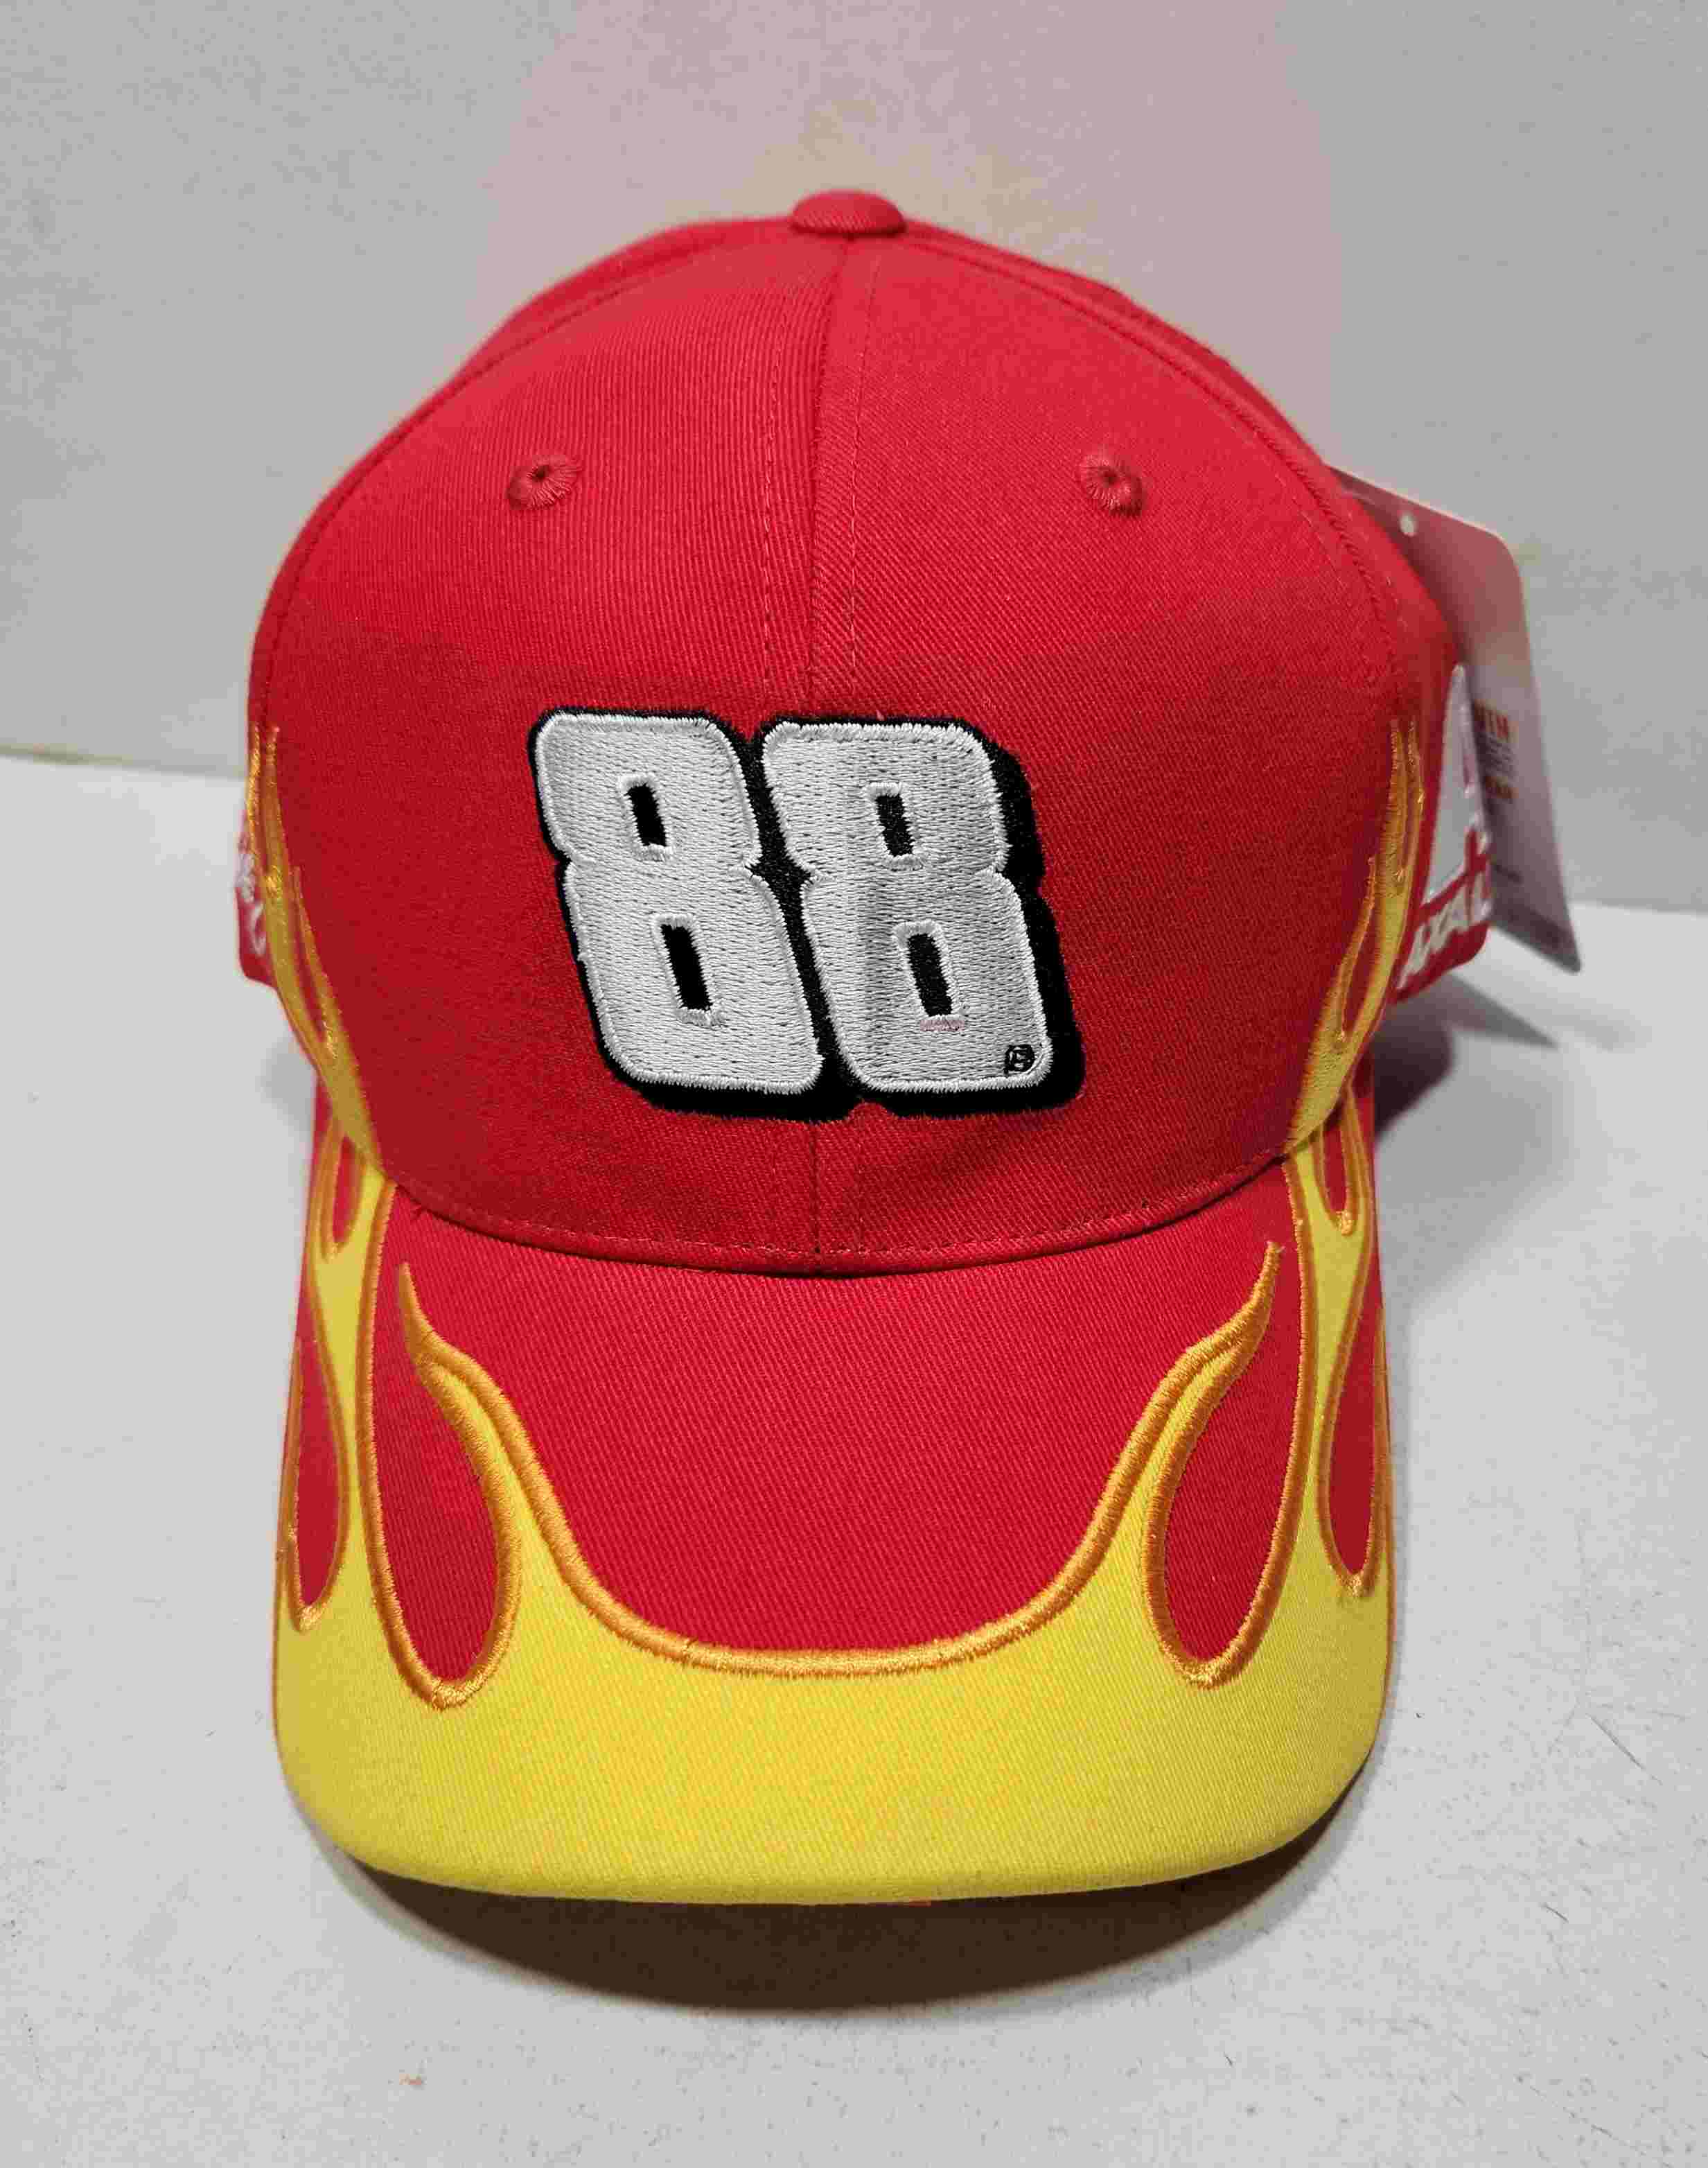 2016 Dale Earnhardt Jr Axalta "Flame" hat